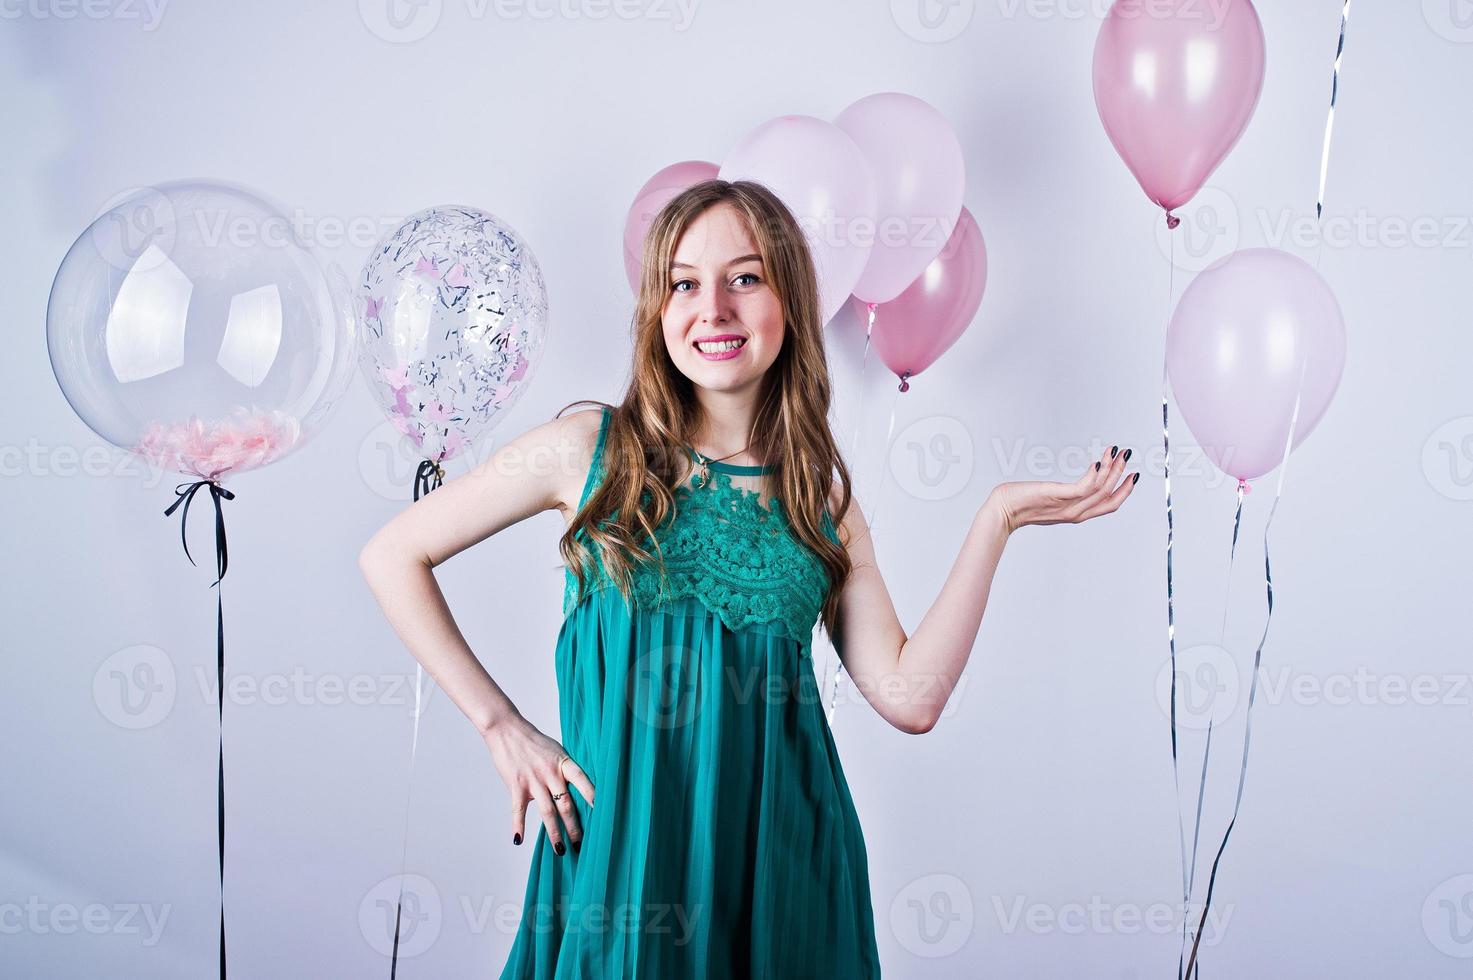 garota feliz no vestido verde turquesa com balões coloridos isolados no branco. comemorando o tema do aniversário. foto